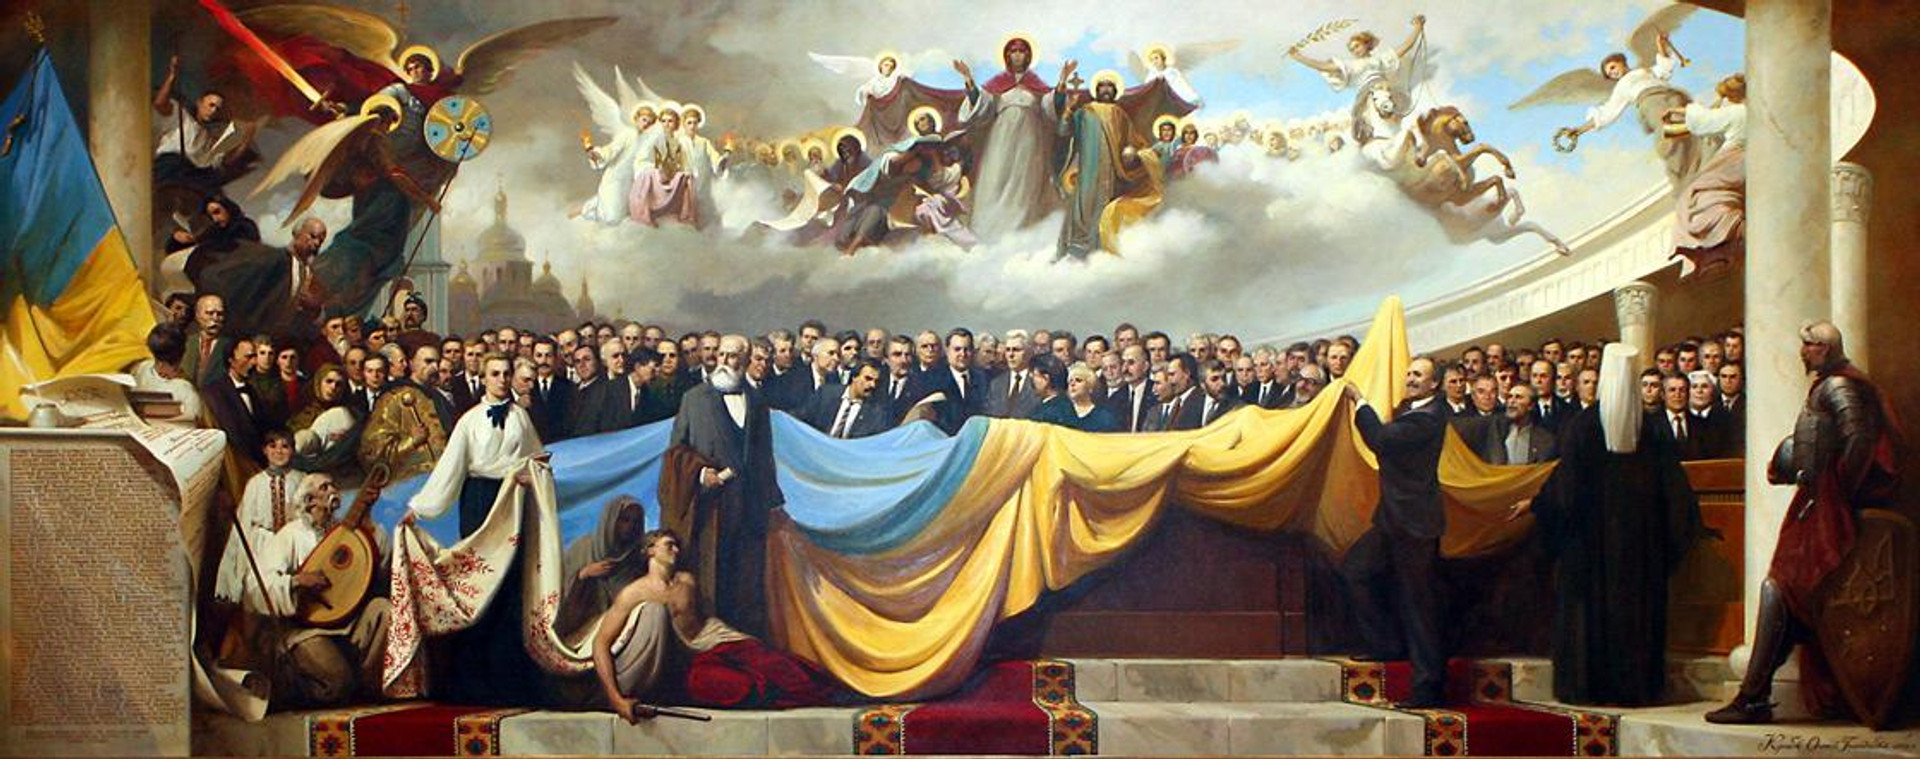 Що ви знаєте про боротьбу за українську незалежність? ТЕСТ